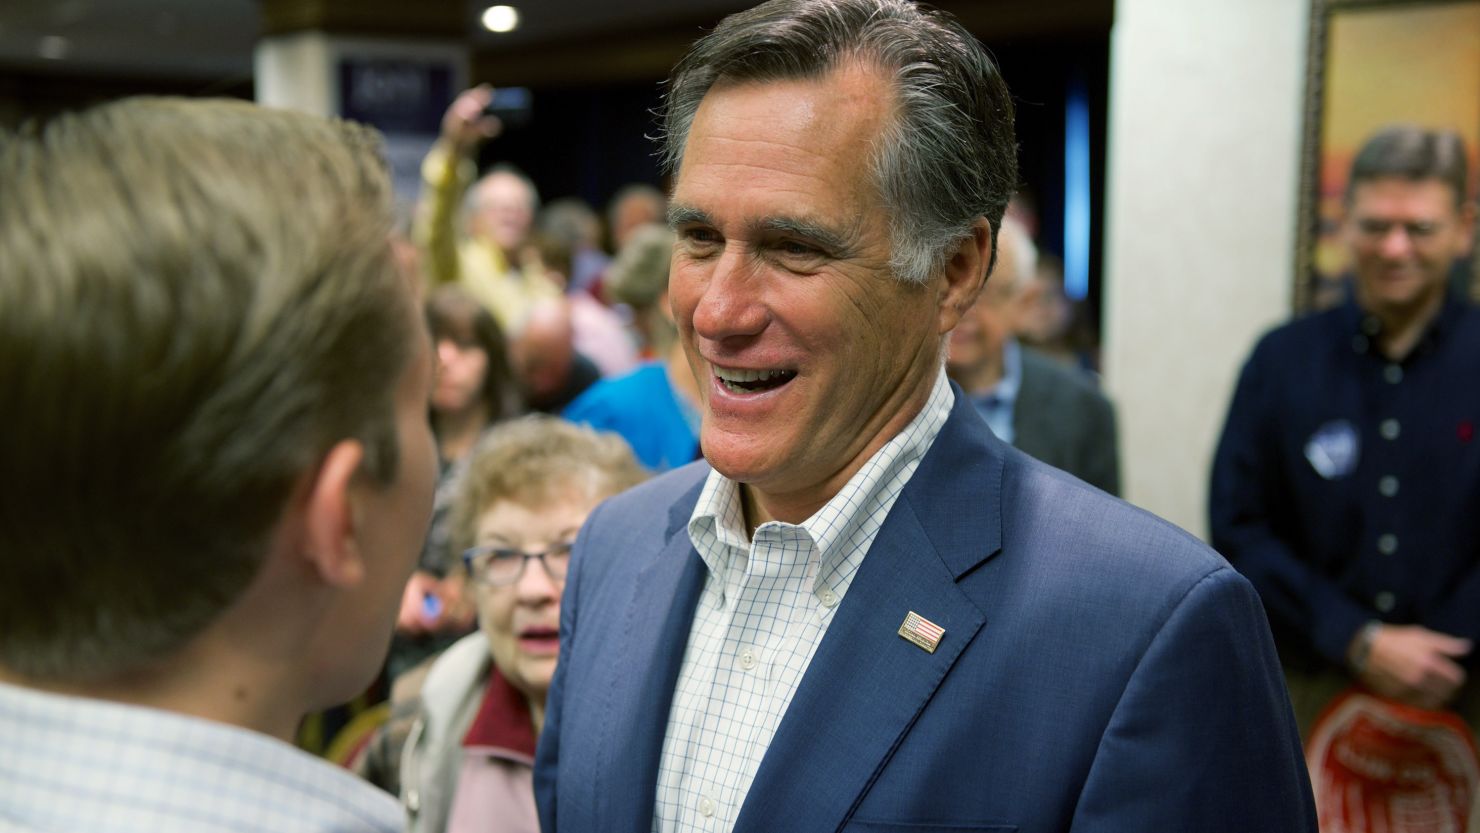 Mitt Romney will attend a rally for North Carolina Republican Senate nominee Thom Tillis next week.